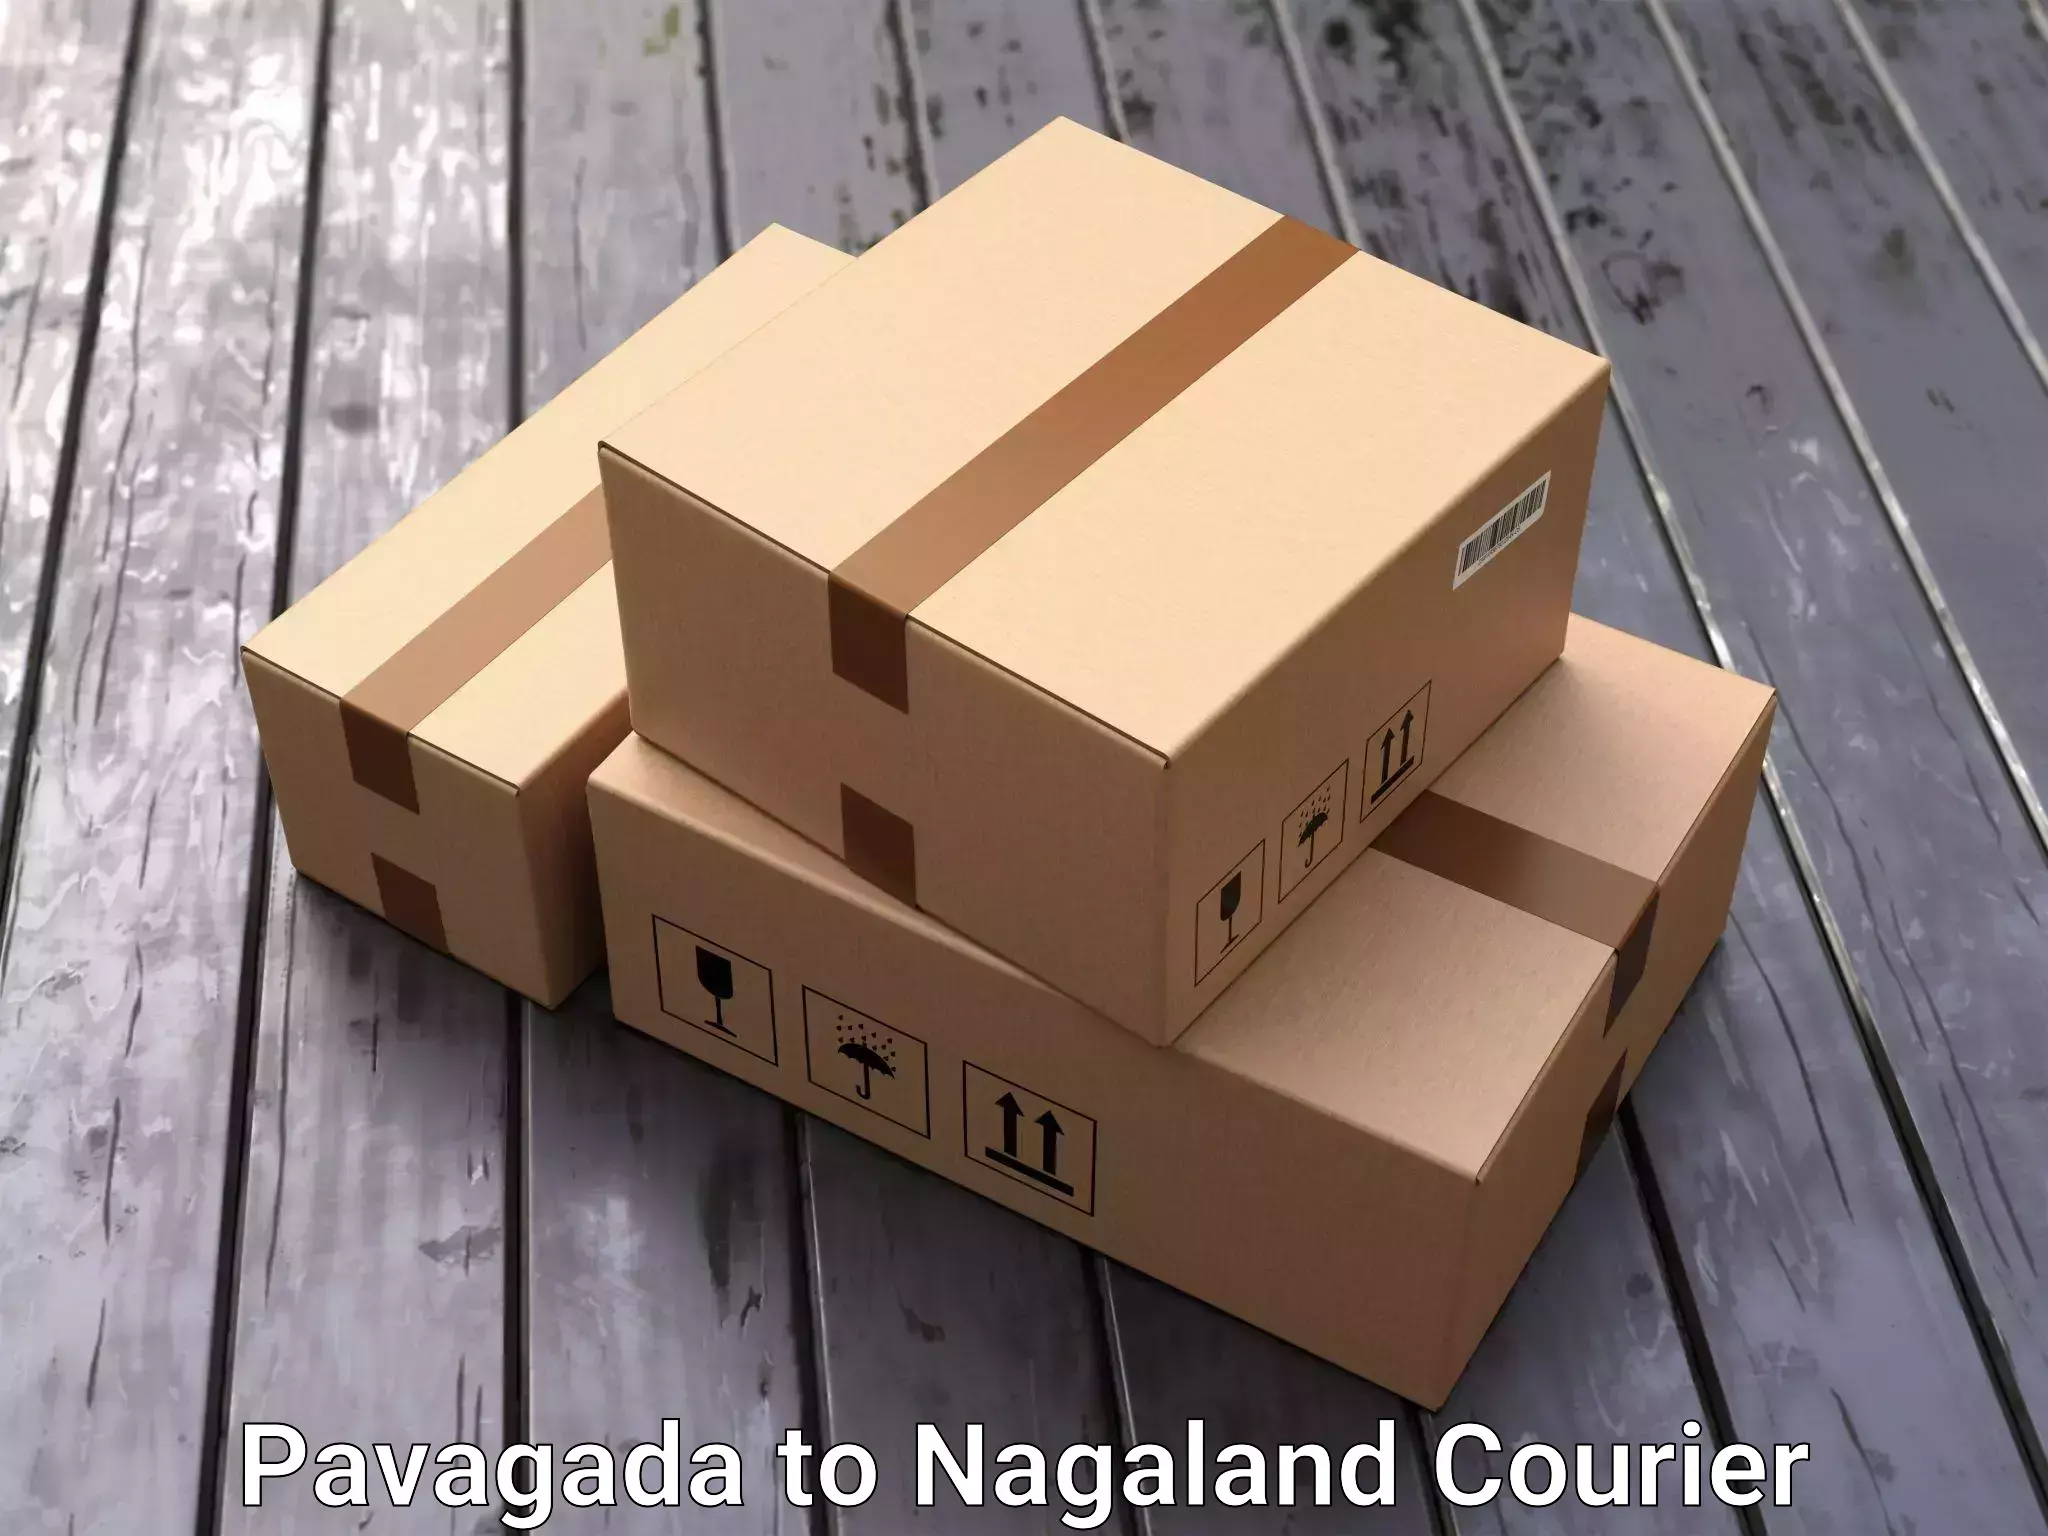 Furniture transport service Pavagada to Tuensang